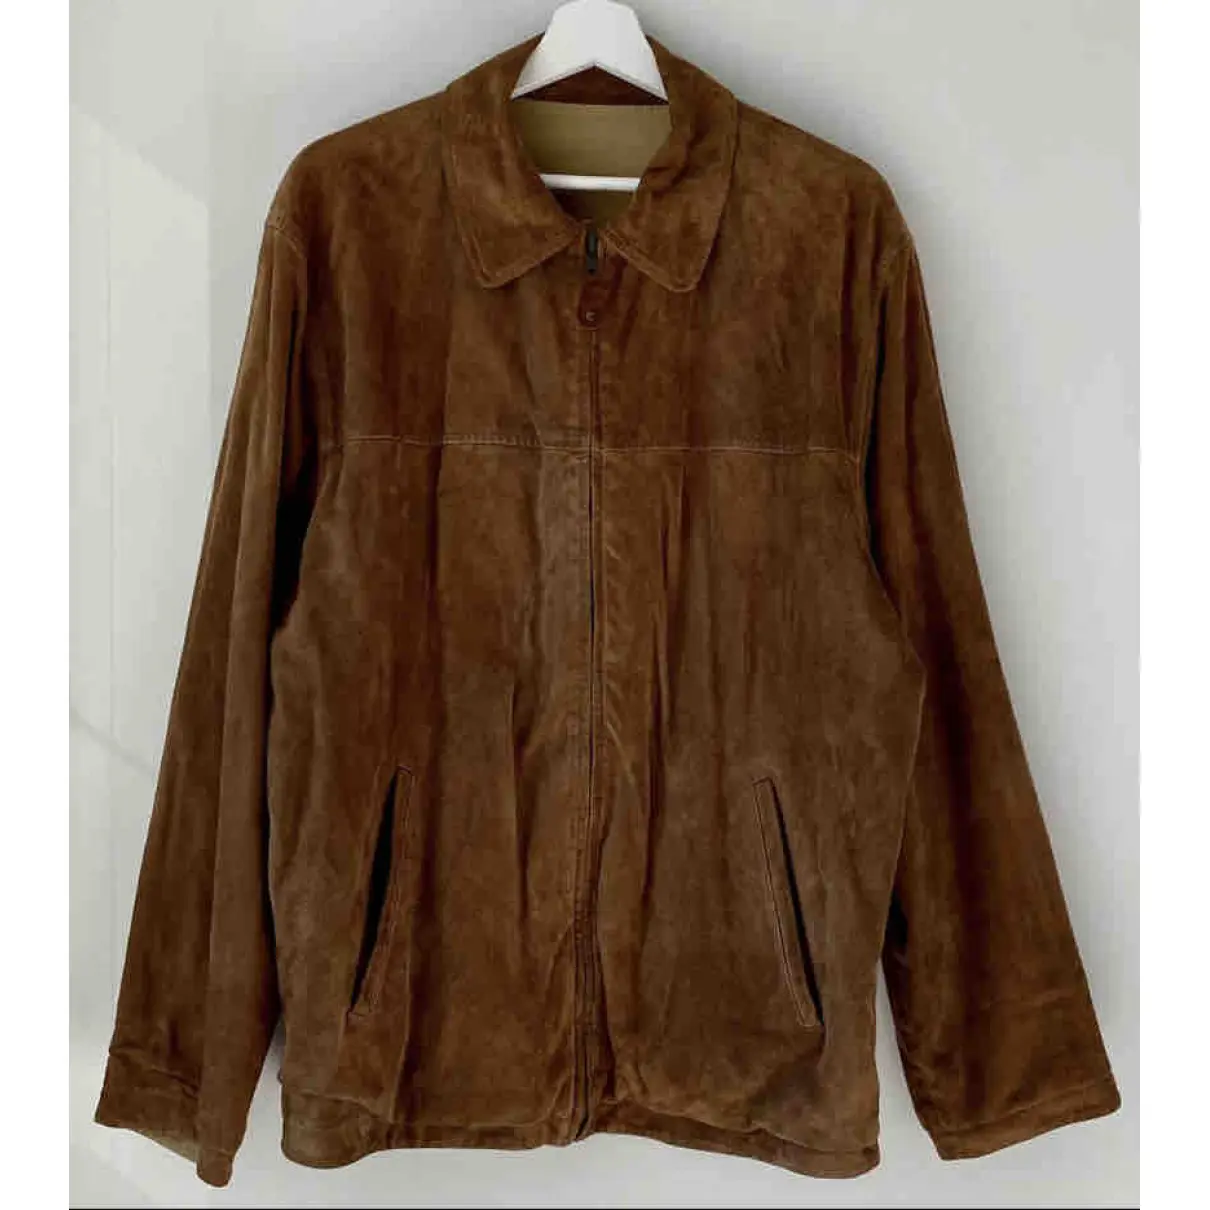 Buy Massimo Dutti Jacket online - Vintage